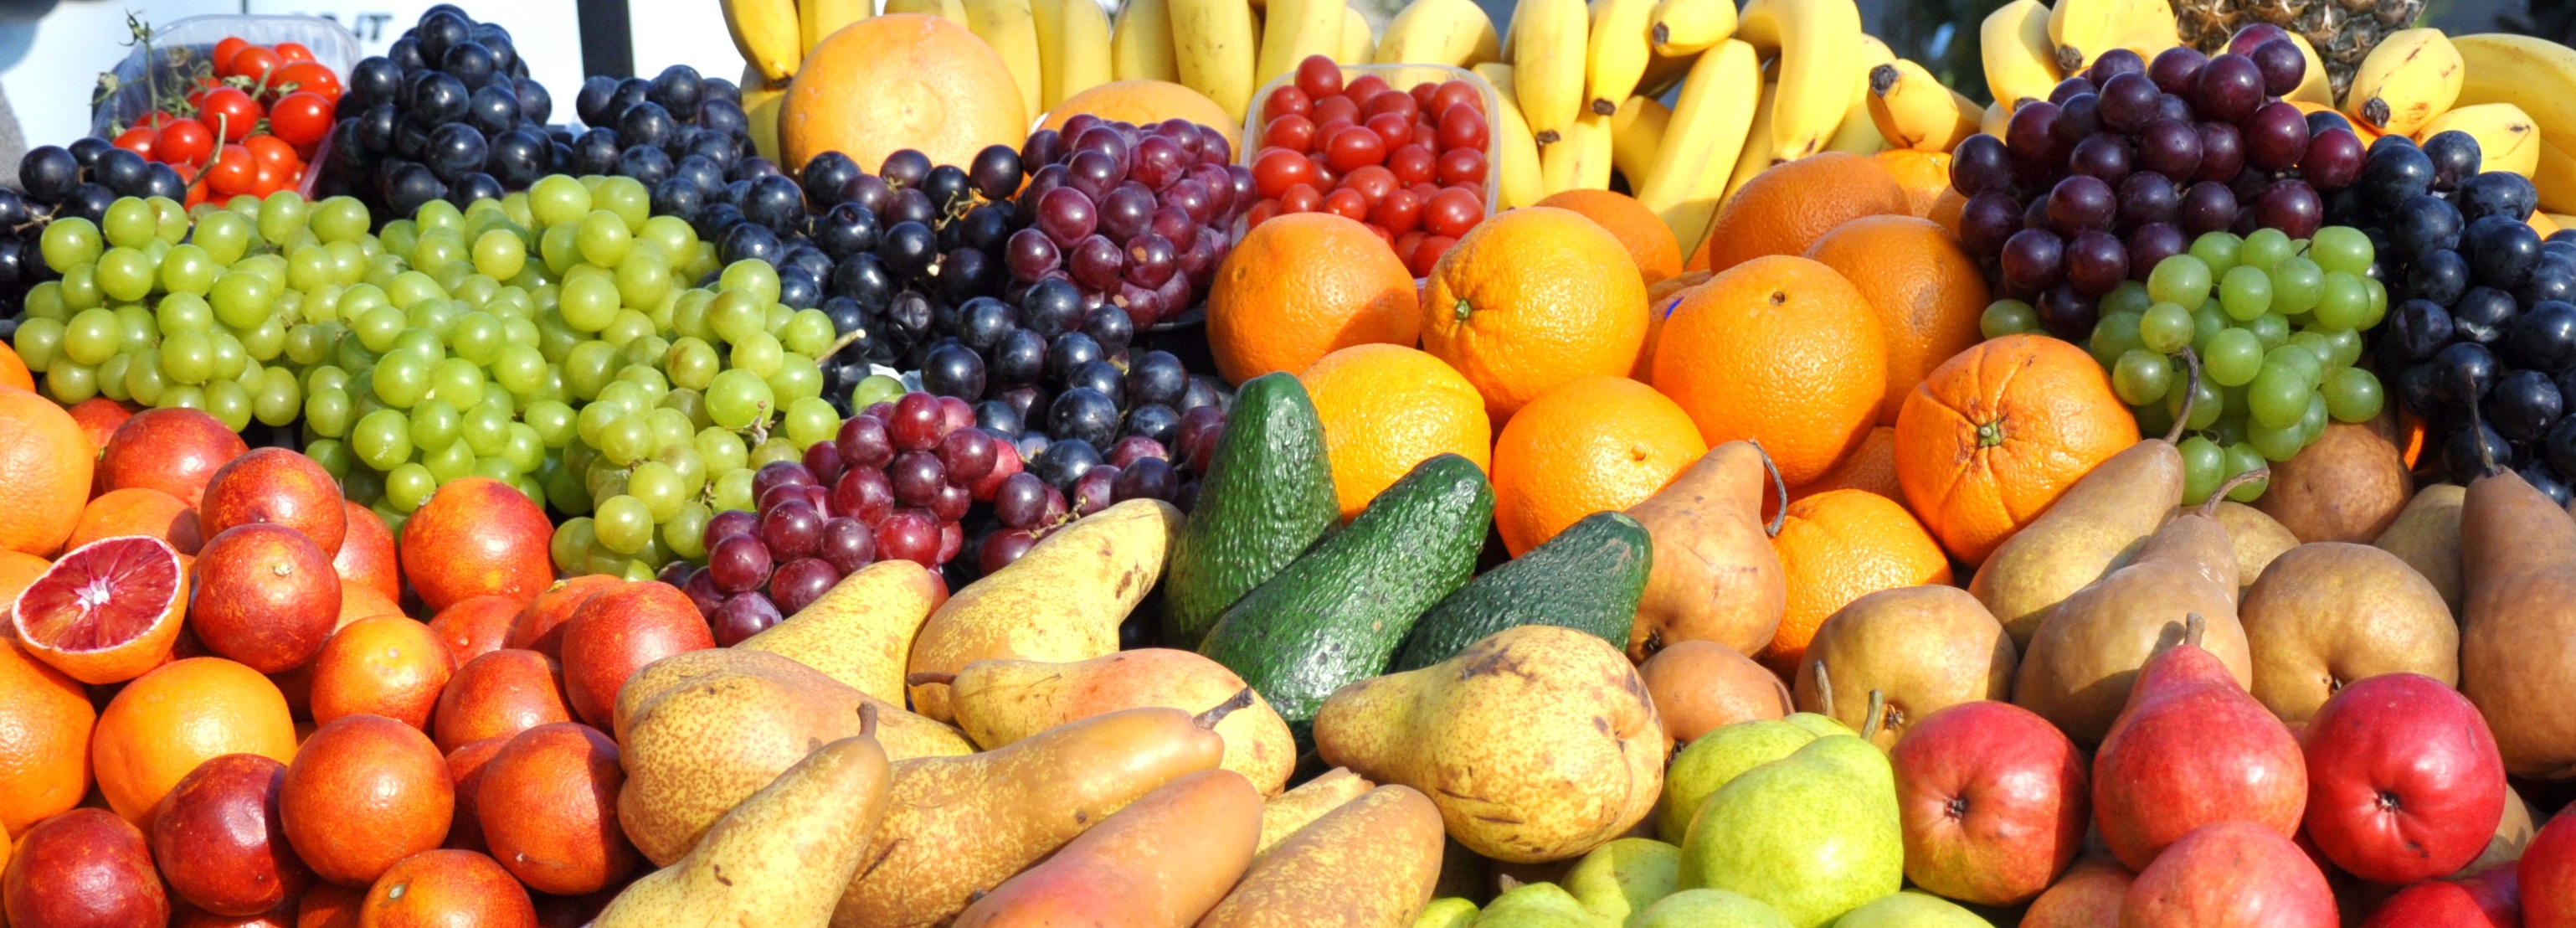 Овощи фрукты узкие